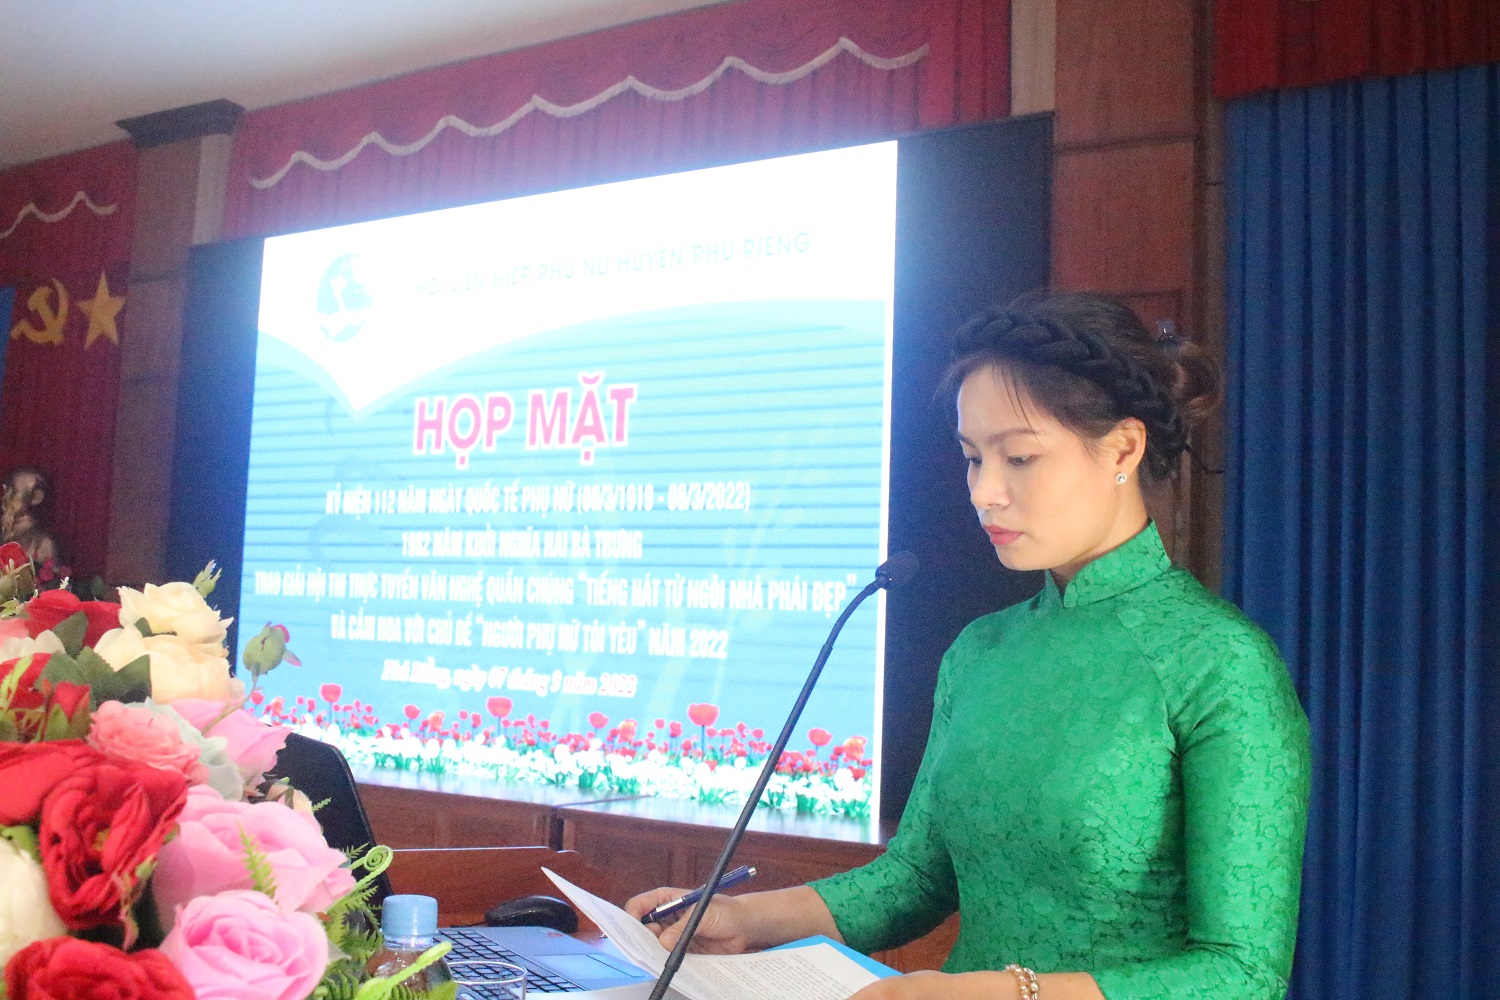 Huyện Phú Riềng họp mặt ngày Quốc tế Phụ nữ 8/3 - trao giải Hội thi trực tuyến văn nghệ quần chúng và cắm hoa .